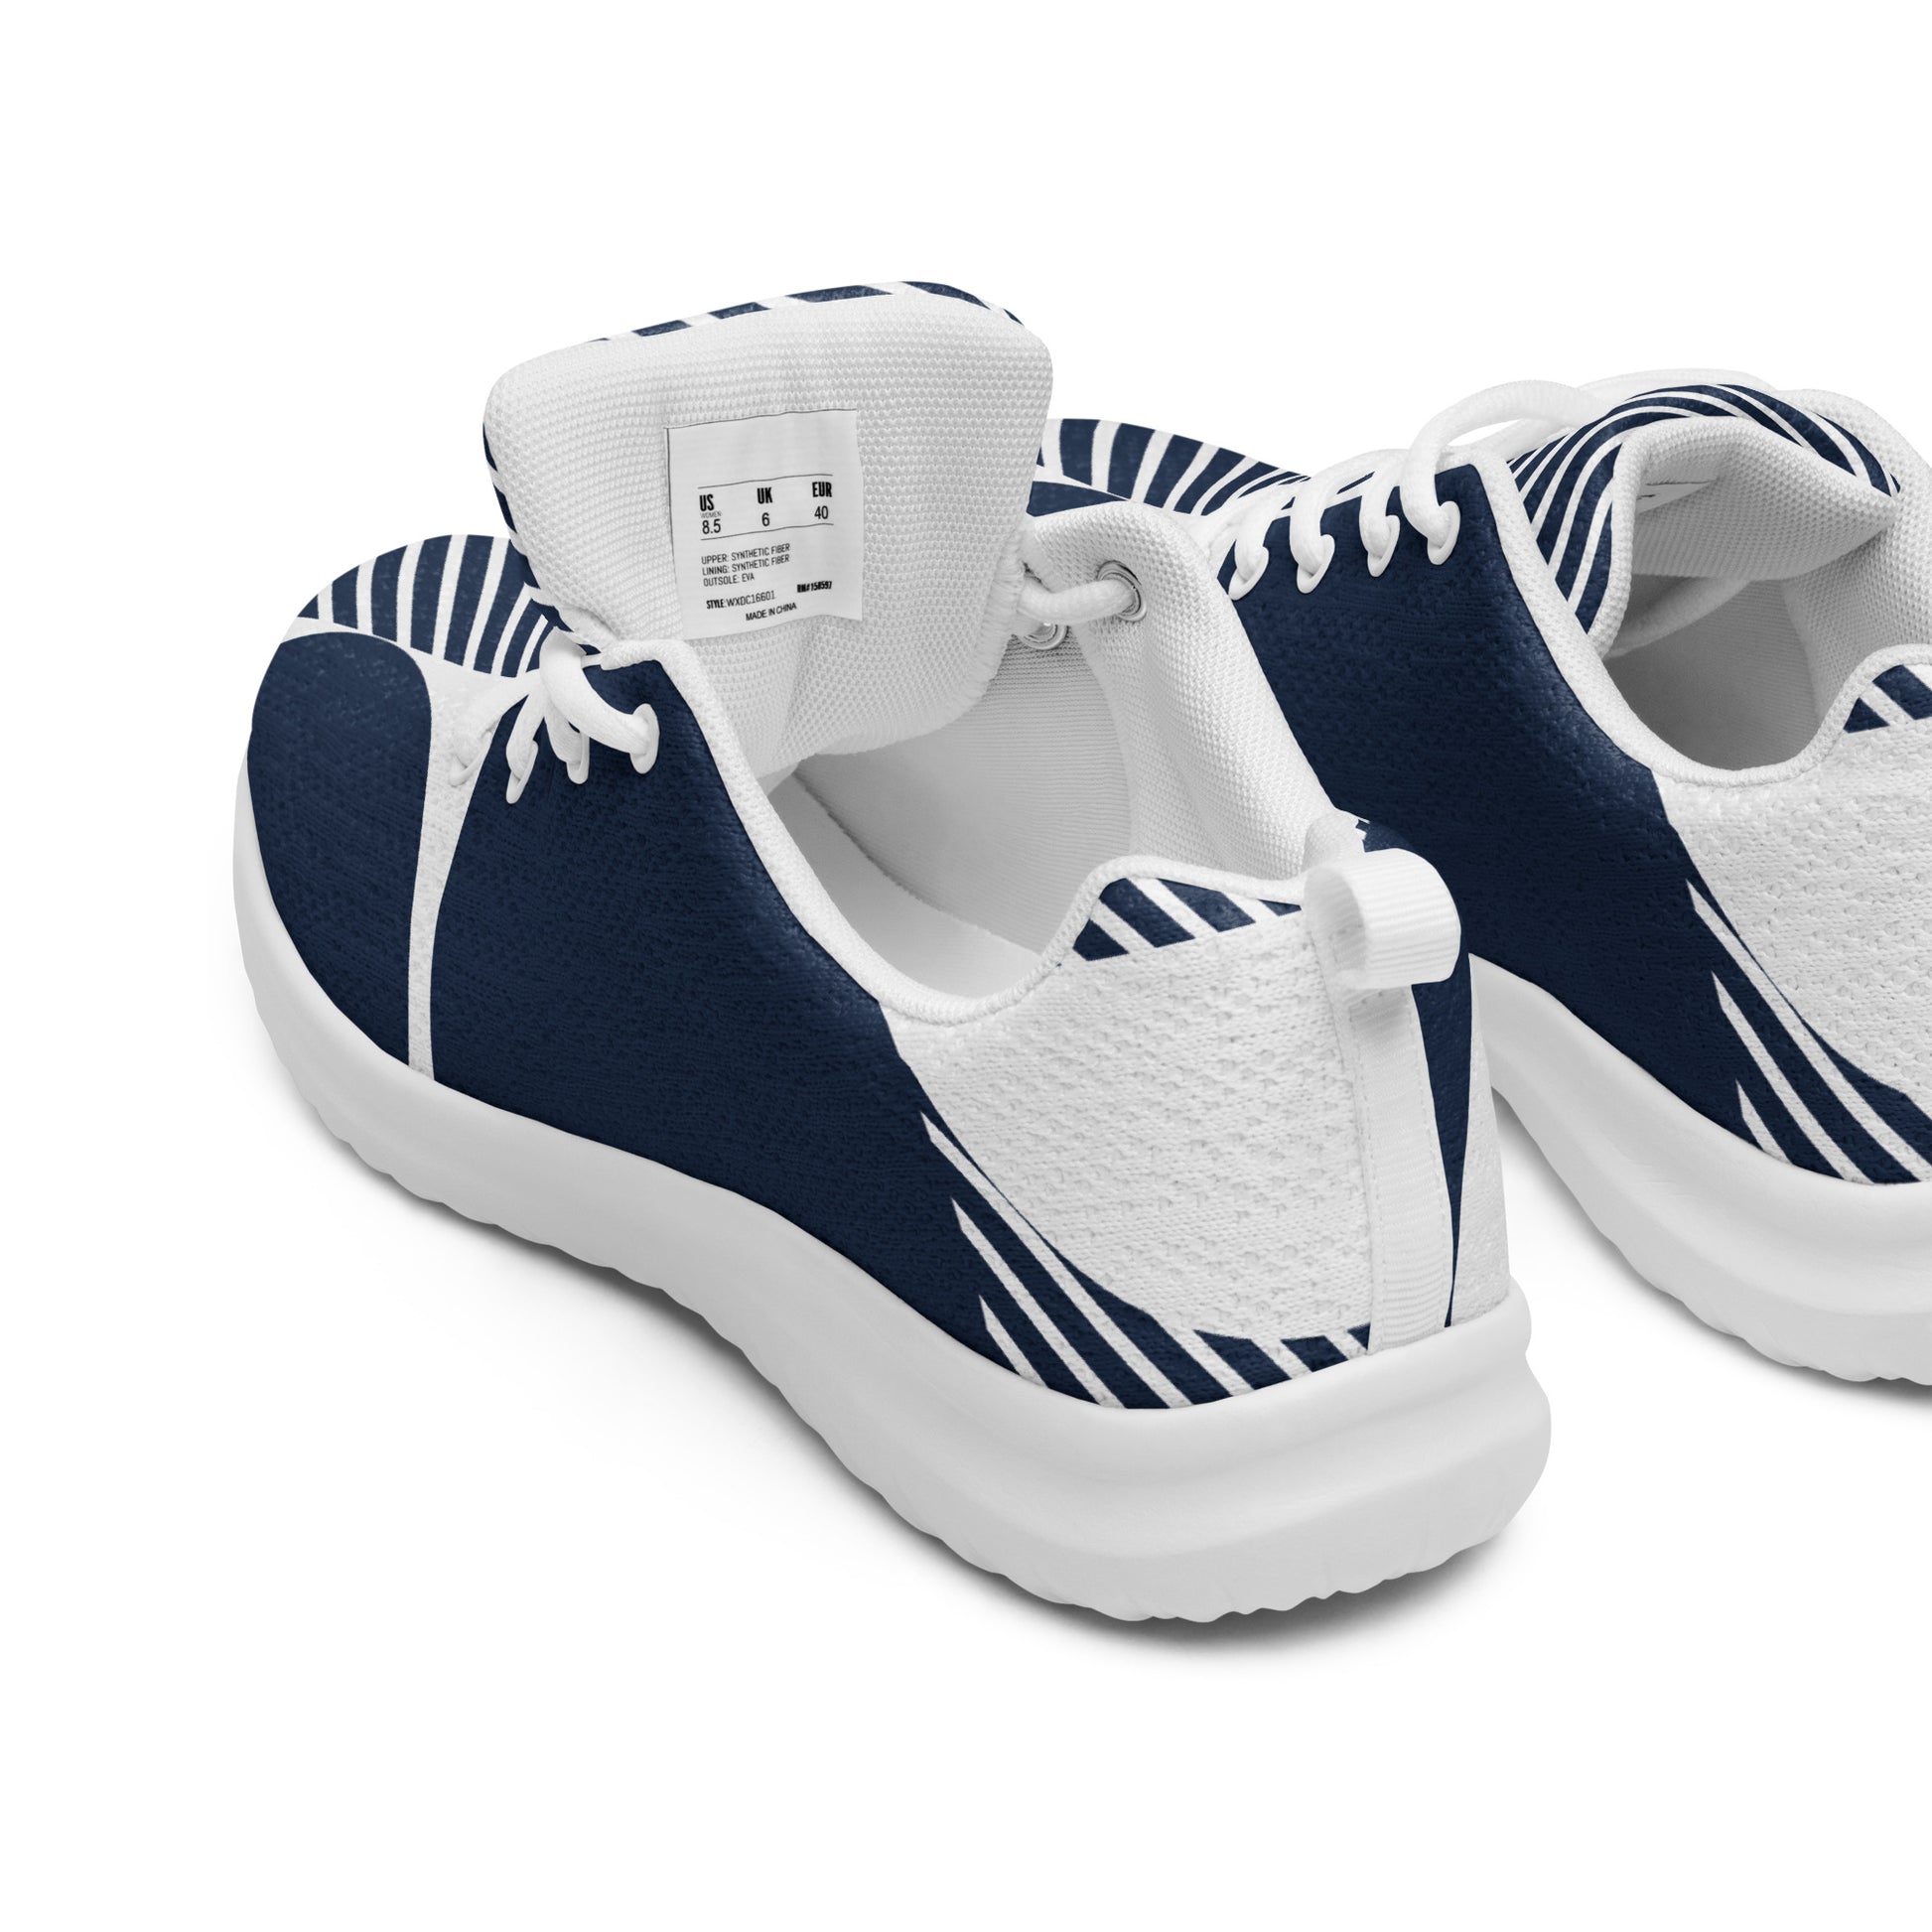 Blue Geometric - Men’s athletic shoes Mens Athletic Shoes